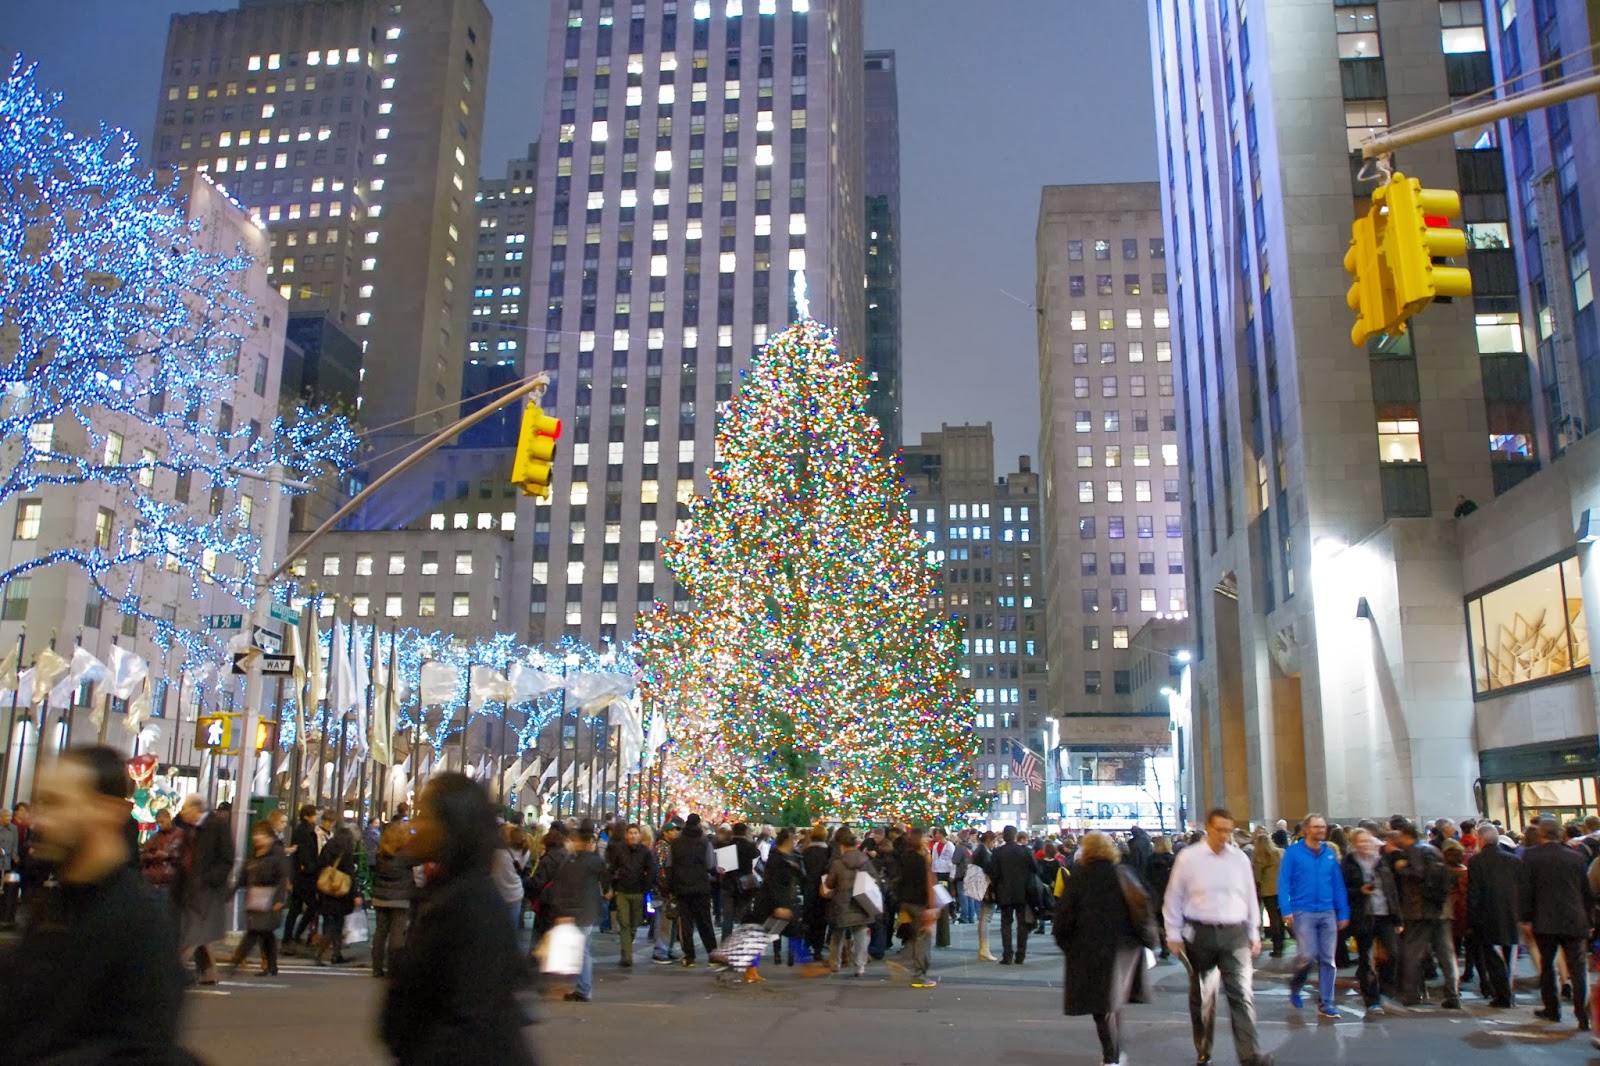 Immagini Natale A New York.Immagini Natale A New York